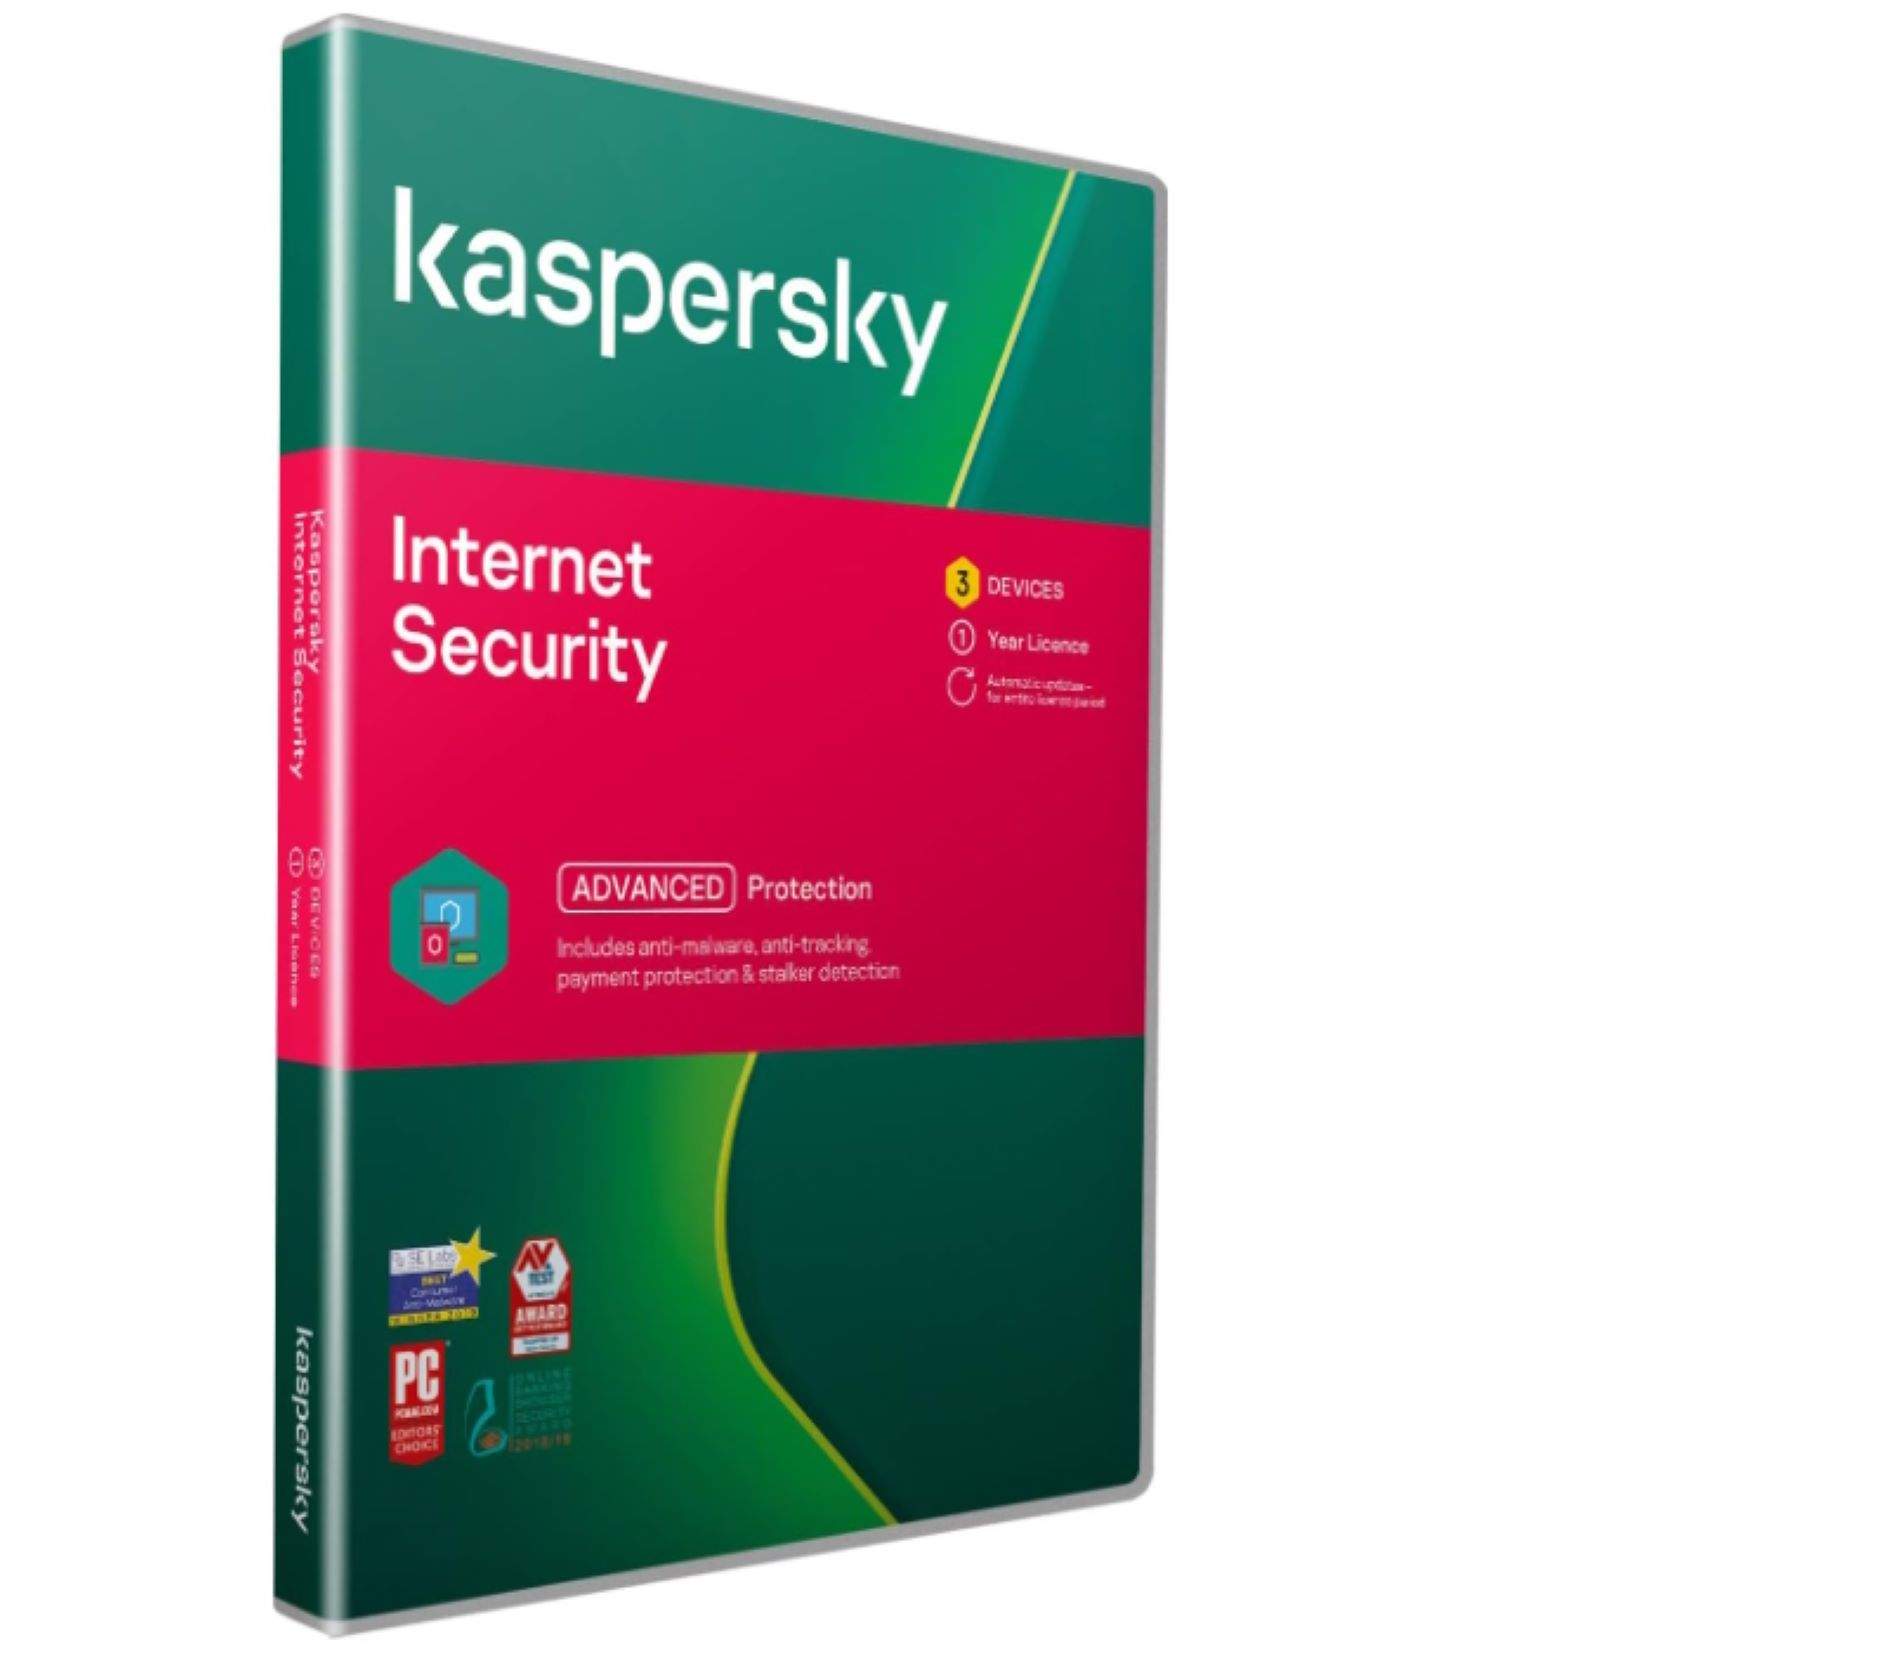 Estats Units prohibeix el popular antivirus Kaspersky: sospita que pot ser una eina d’espionatge rus